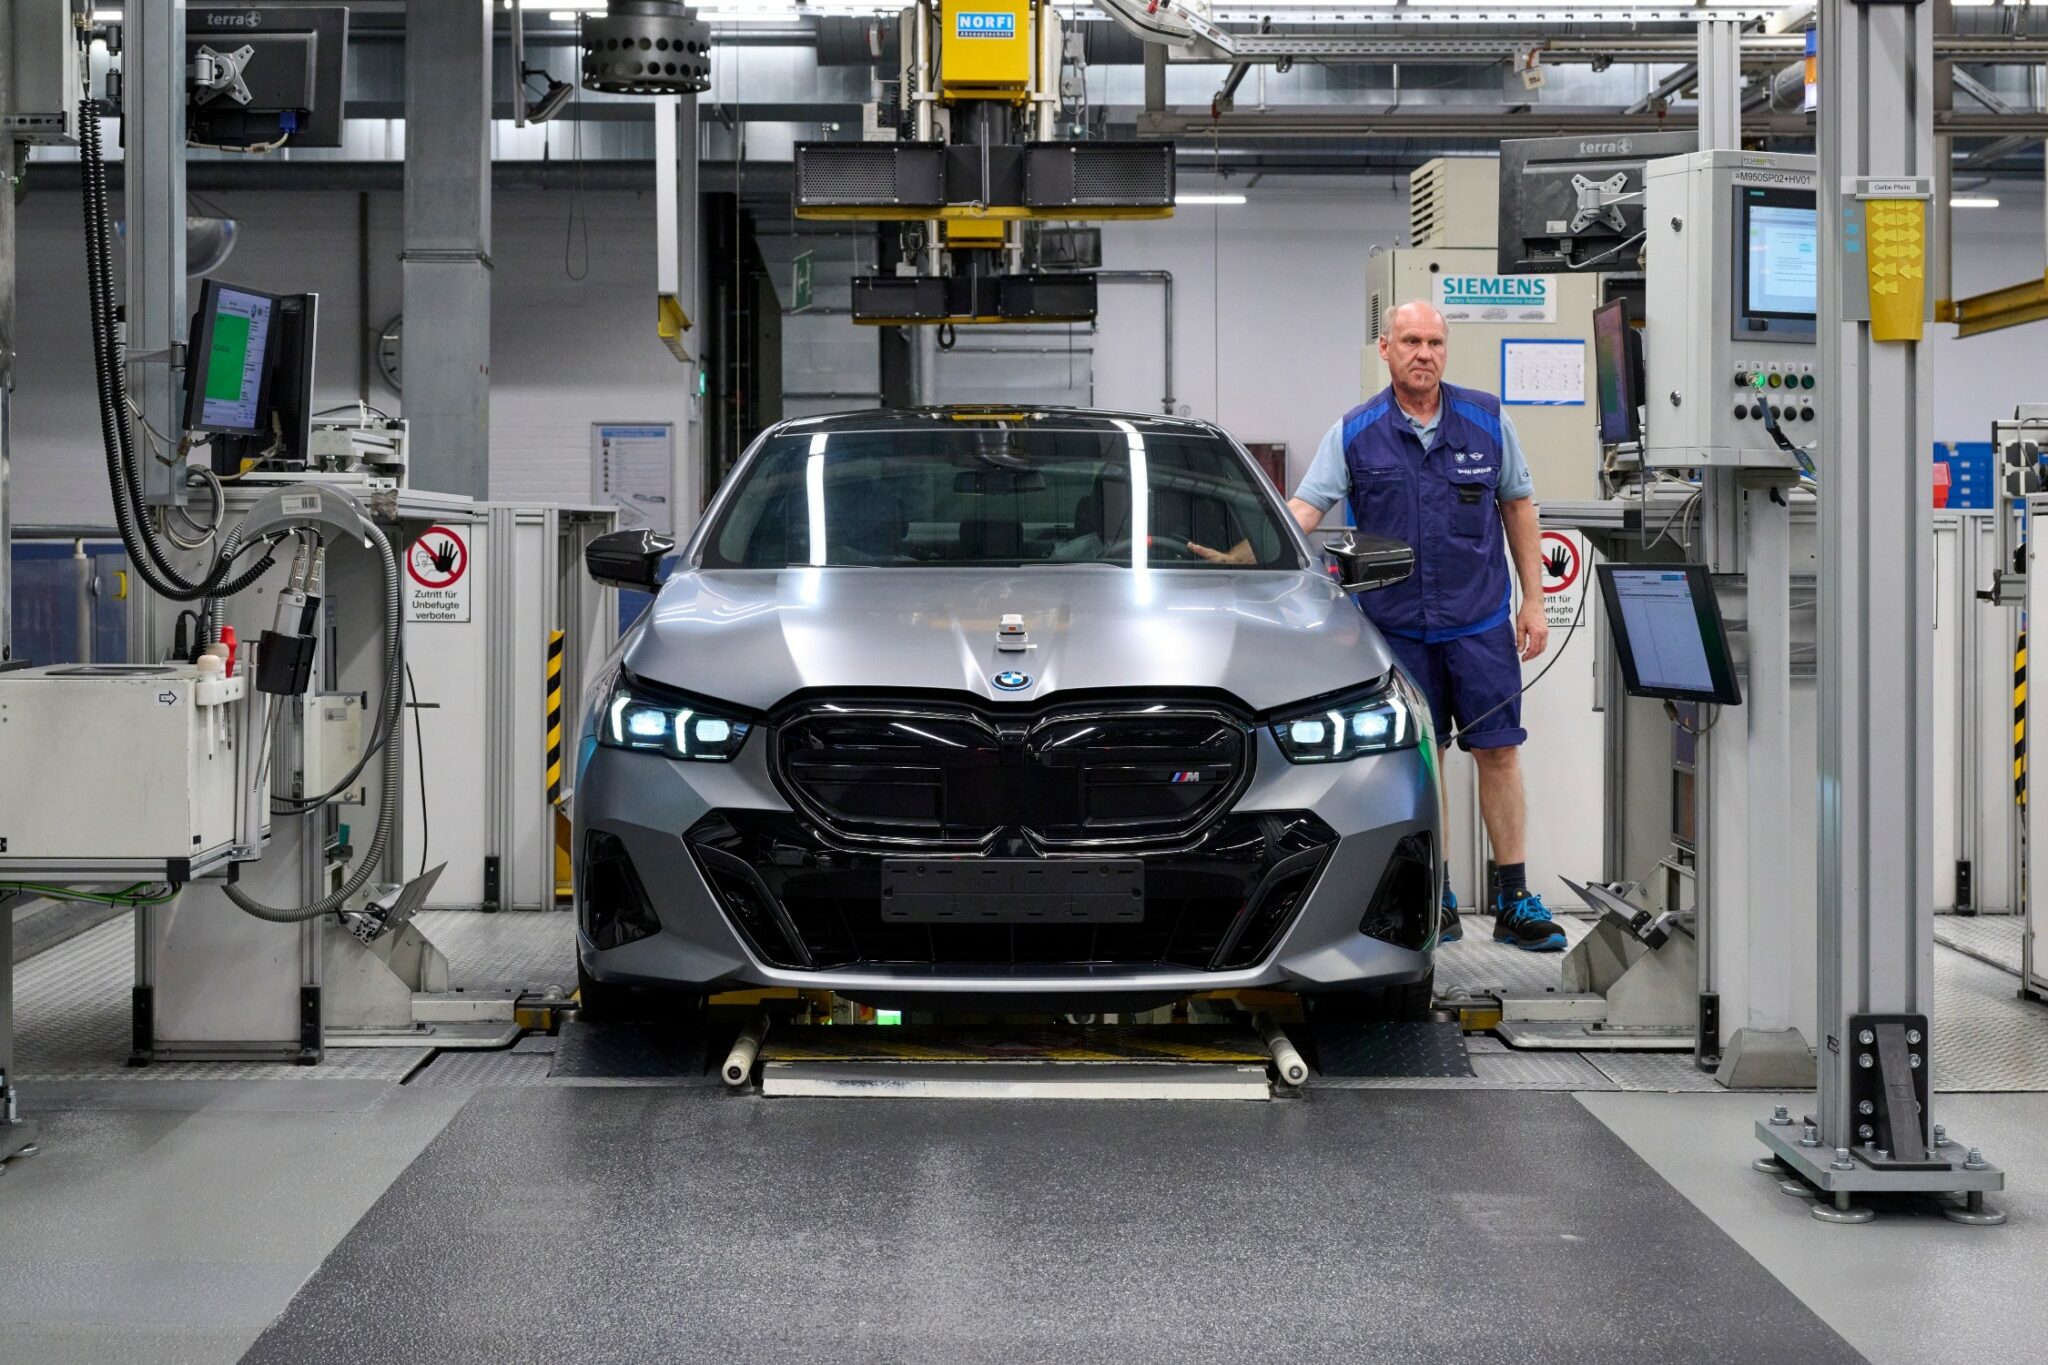 Sans le bonus, les ventes de voitures électriques s’effondrent en Allemagne